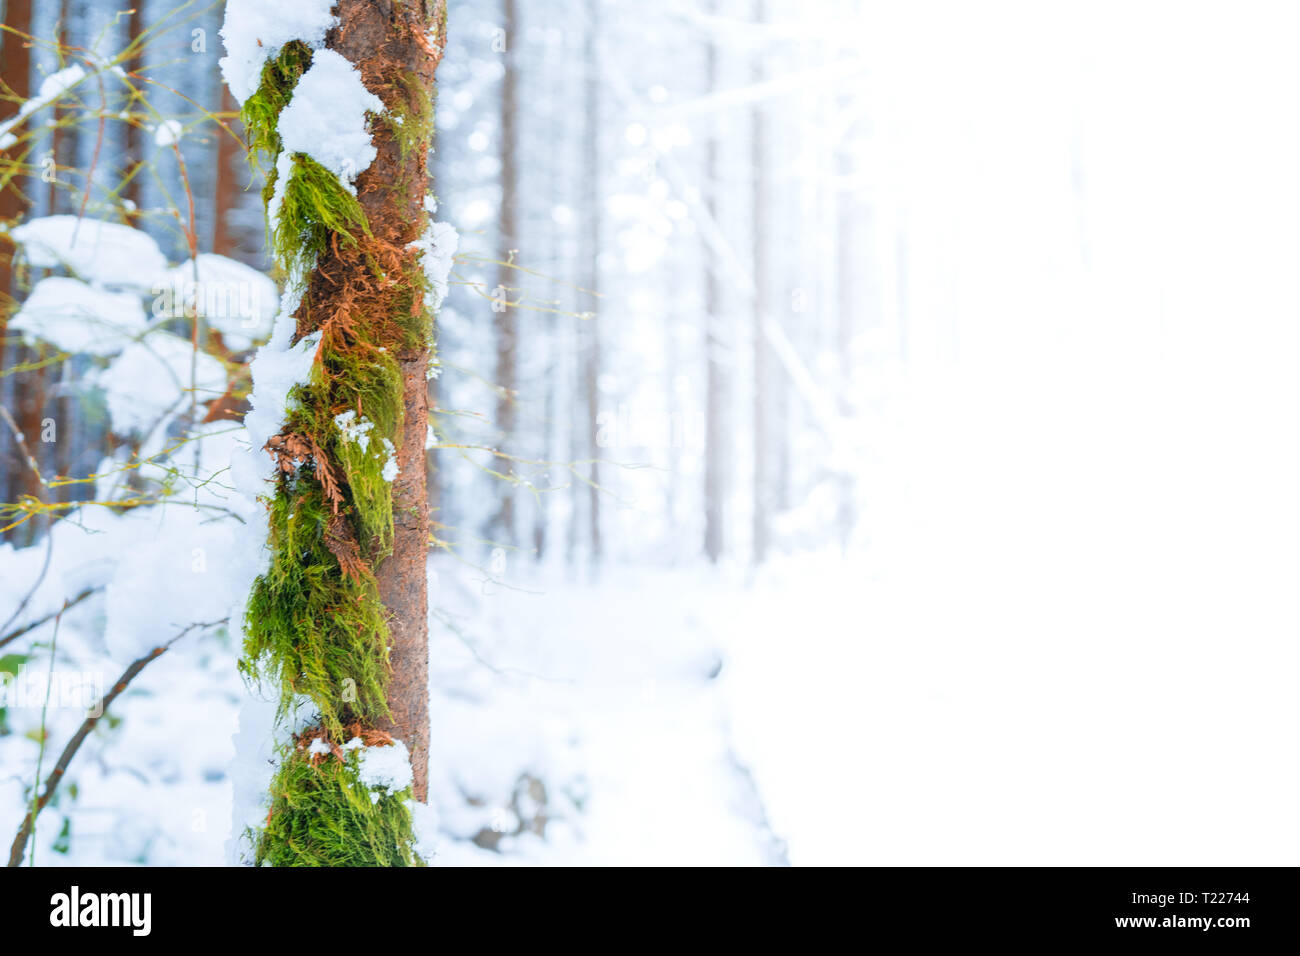 Marrone e verde muschio tronco di albero in primo piano con neve, scena invernale Dissolvenza al bianco per dare spazio per il testo (Copia spazio, uno spazio pubblicitario o sfondo). Foto Stock